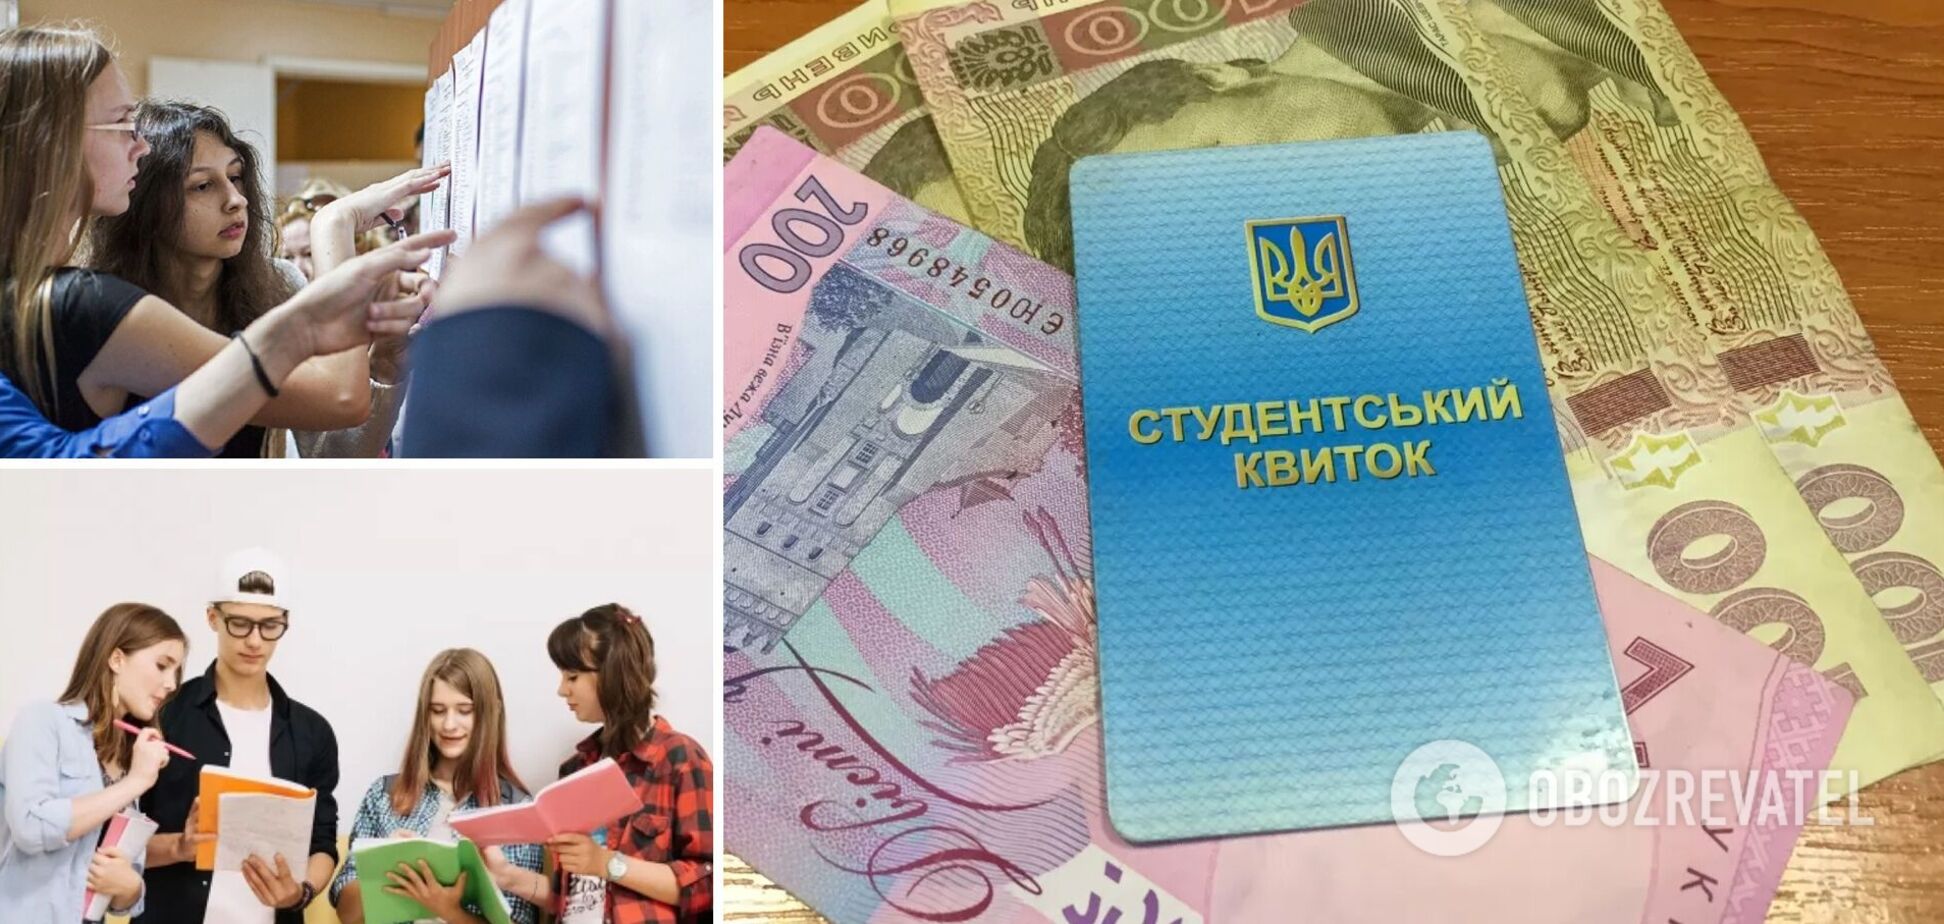 Частные вузы будут принимать на бюджет: что хотят изменить и в чем выгода для украинских студентов